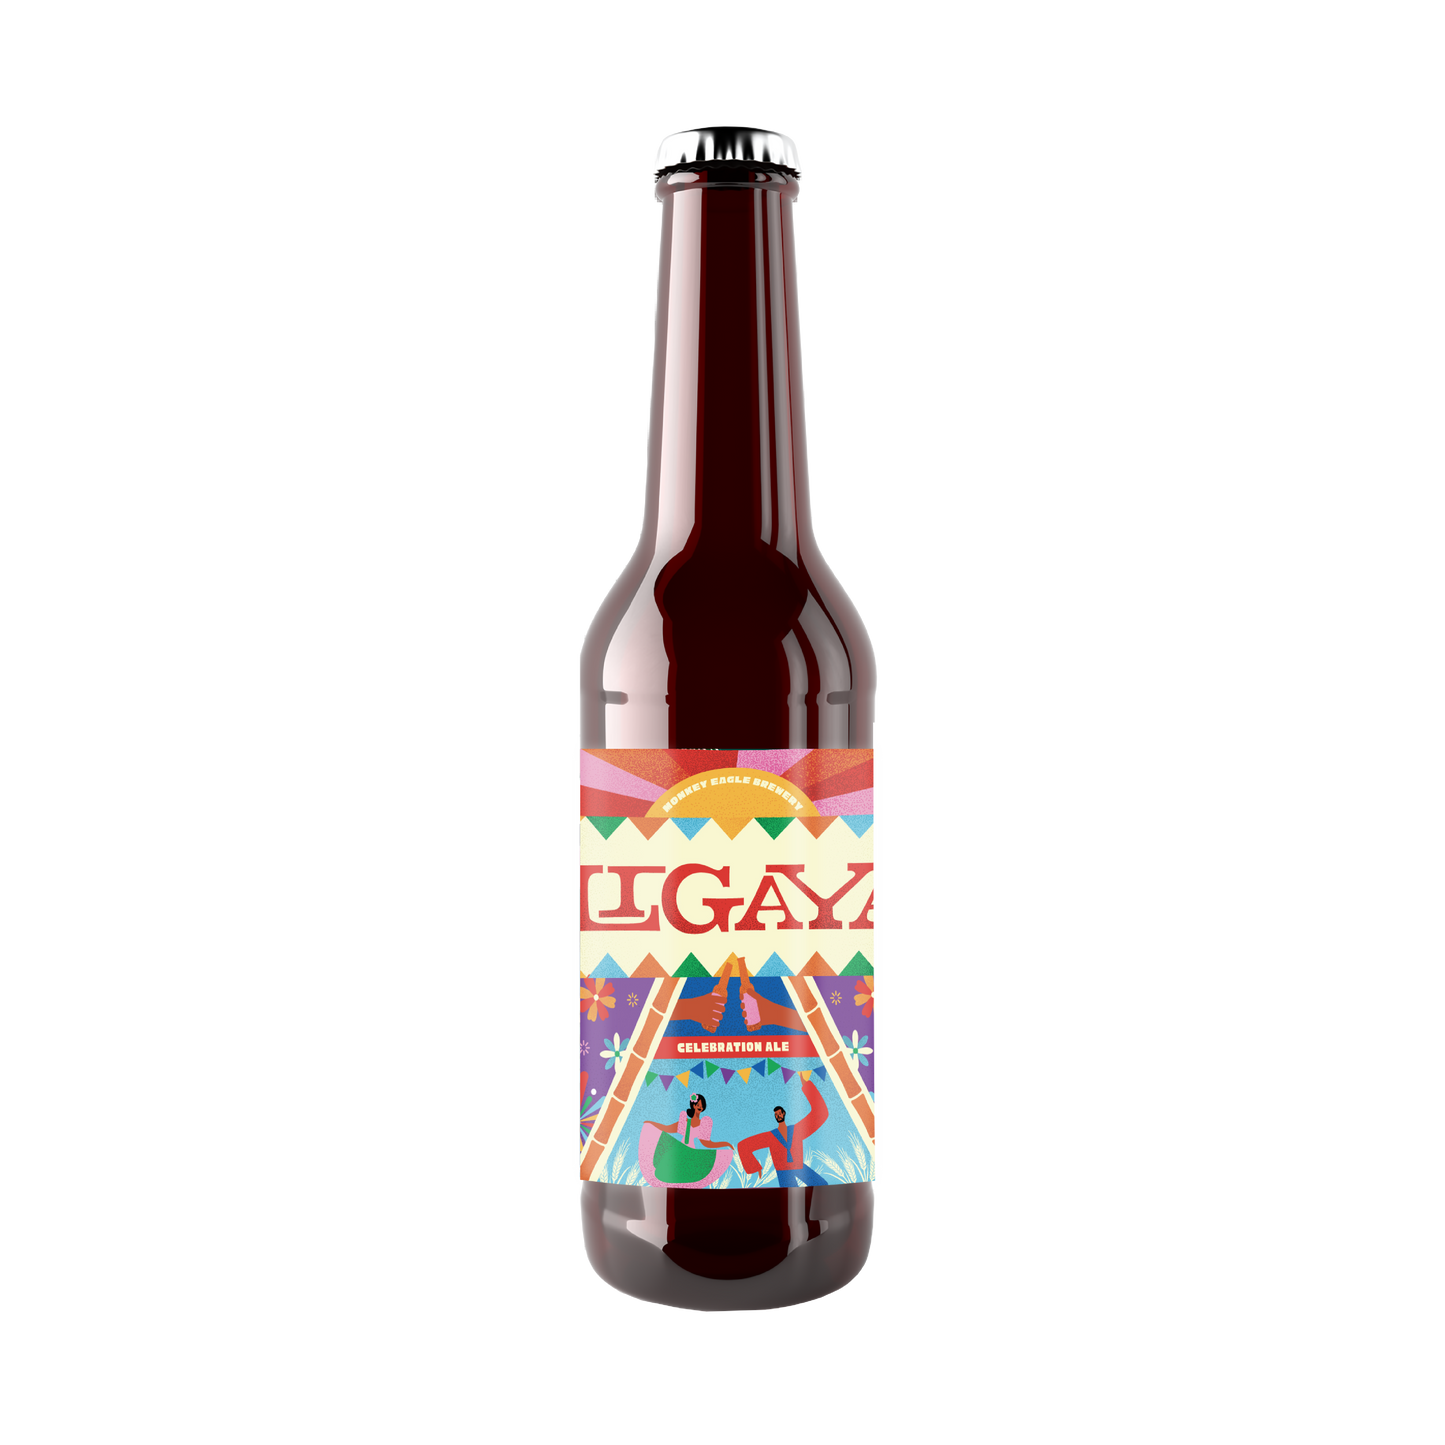 Ligaya (Celebration Ale)